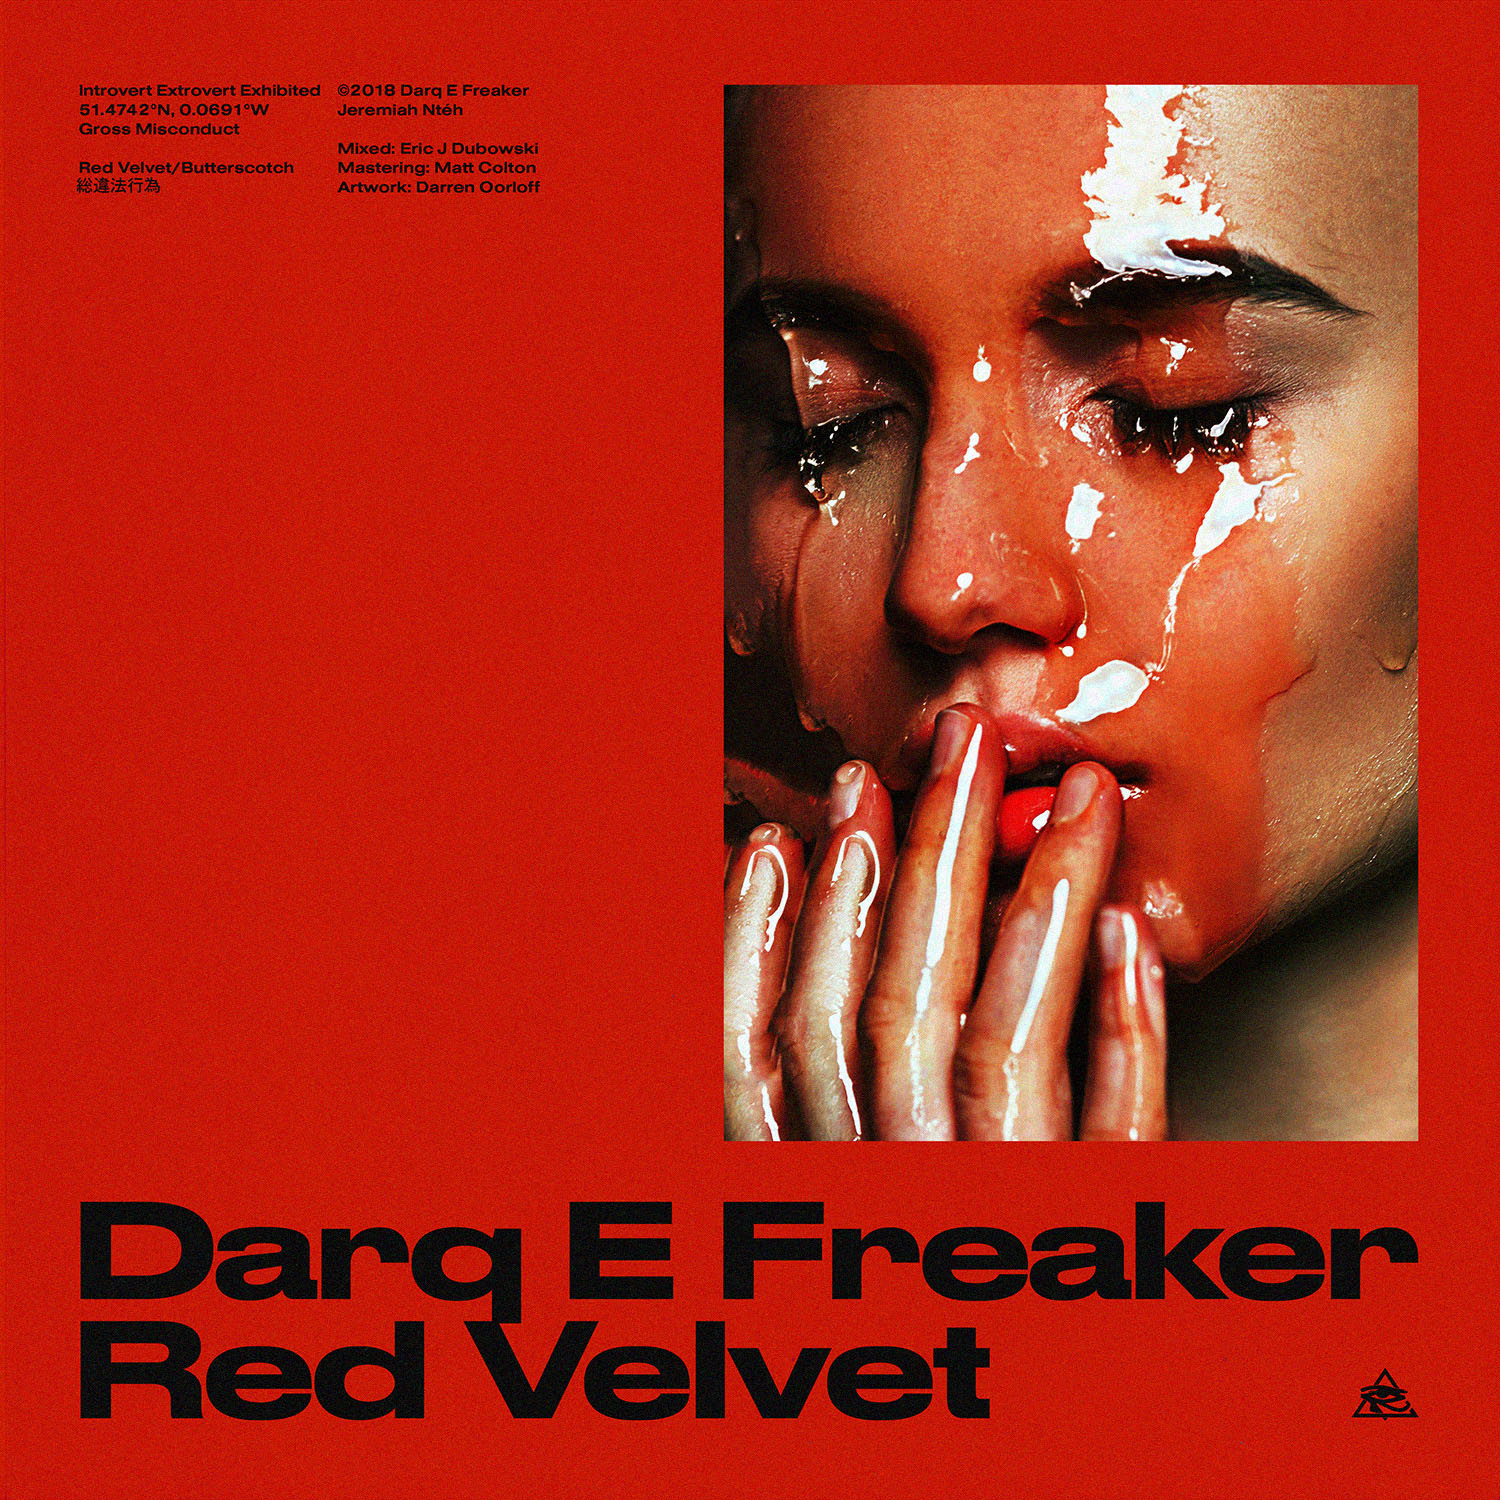 Darq E Freaker - Red Velvet